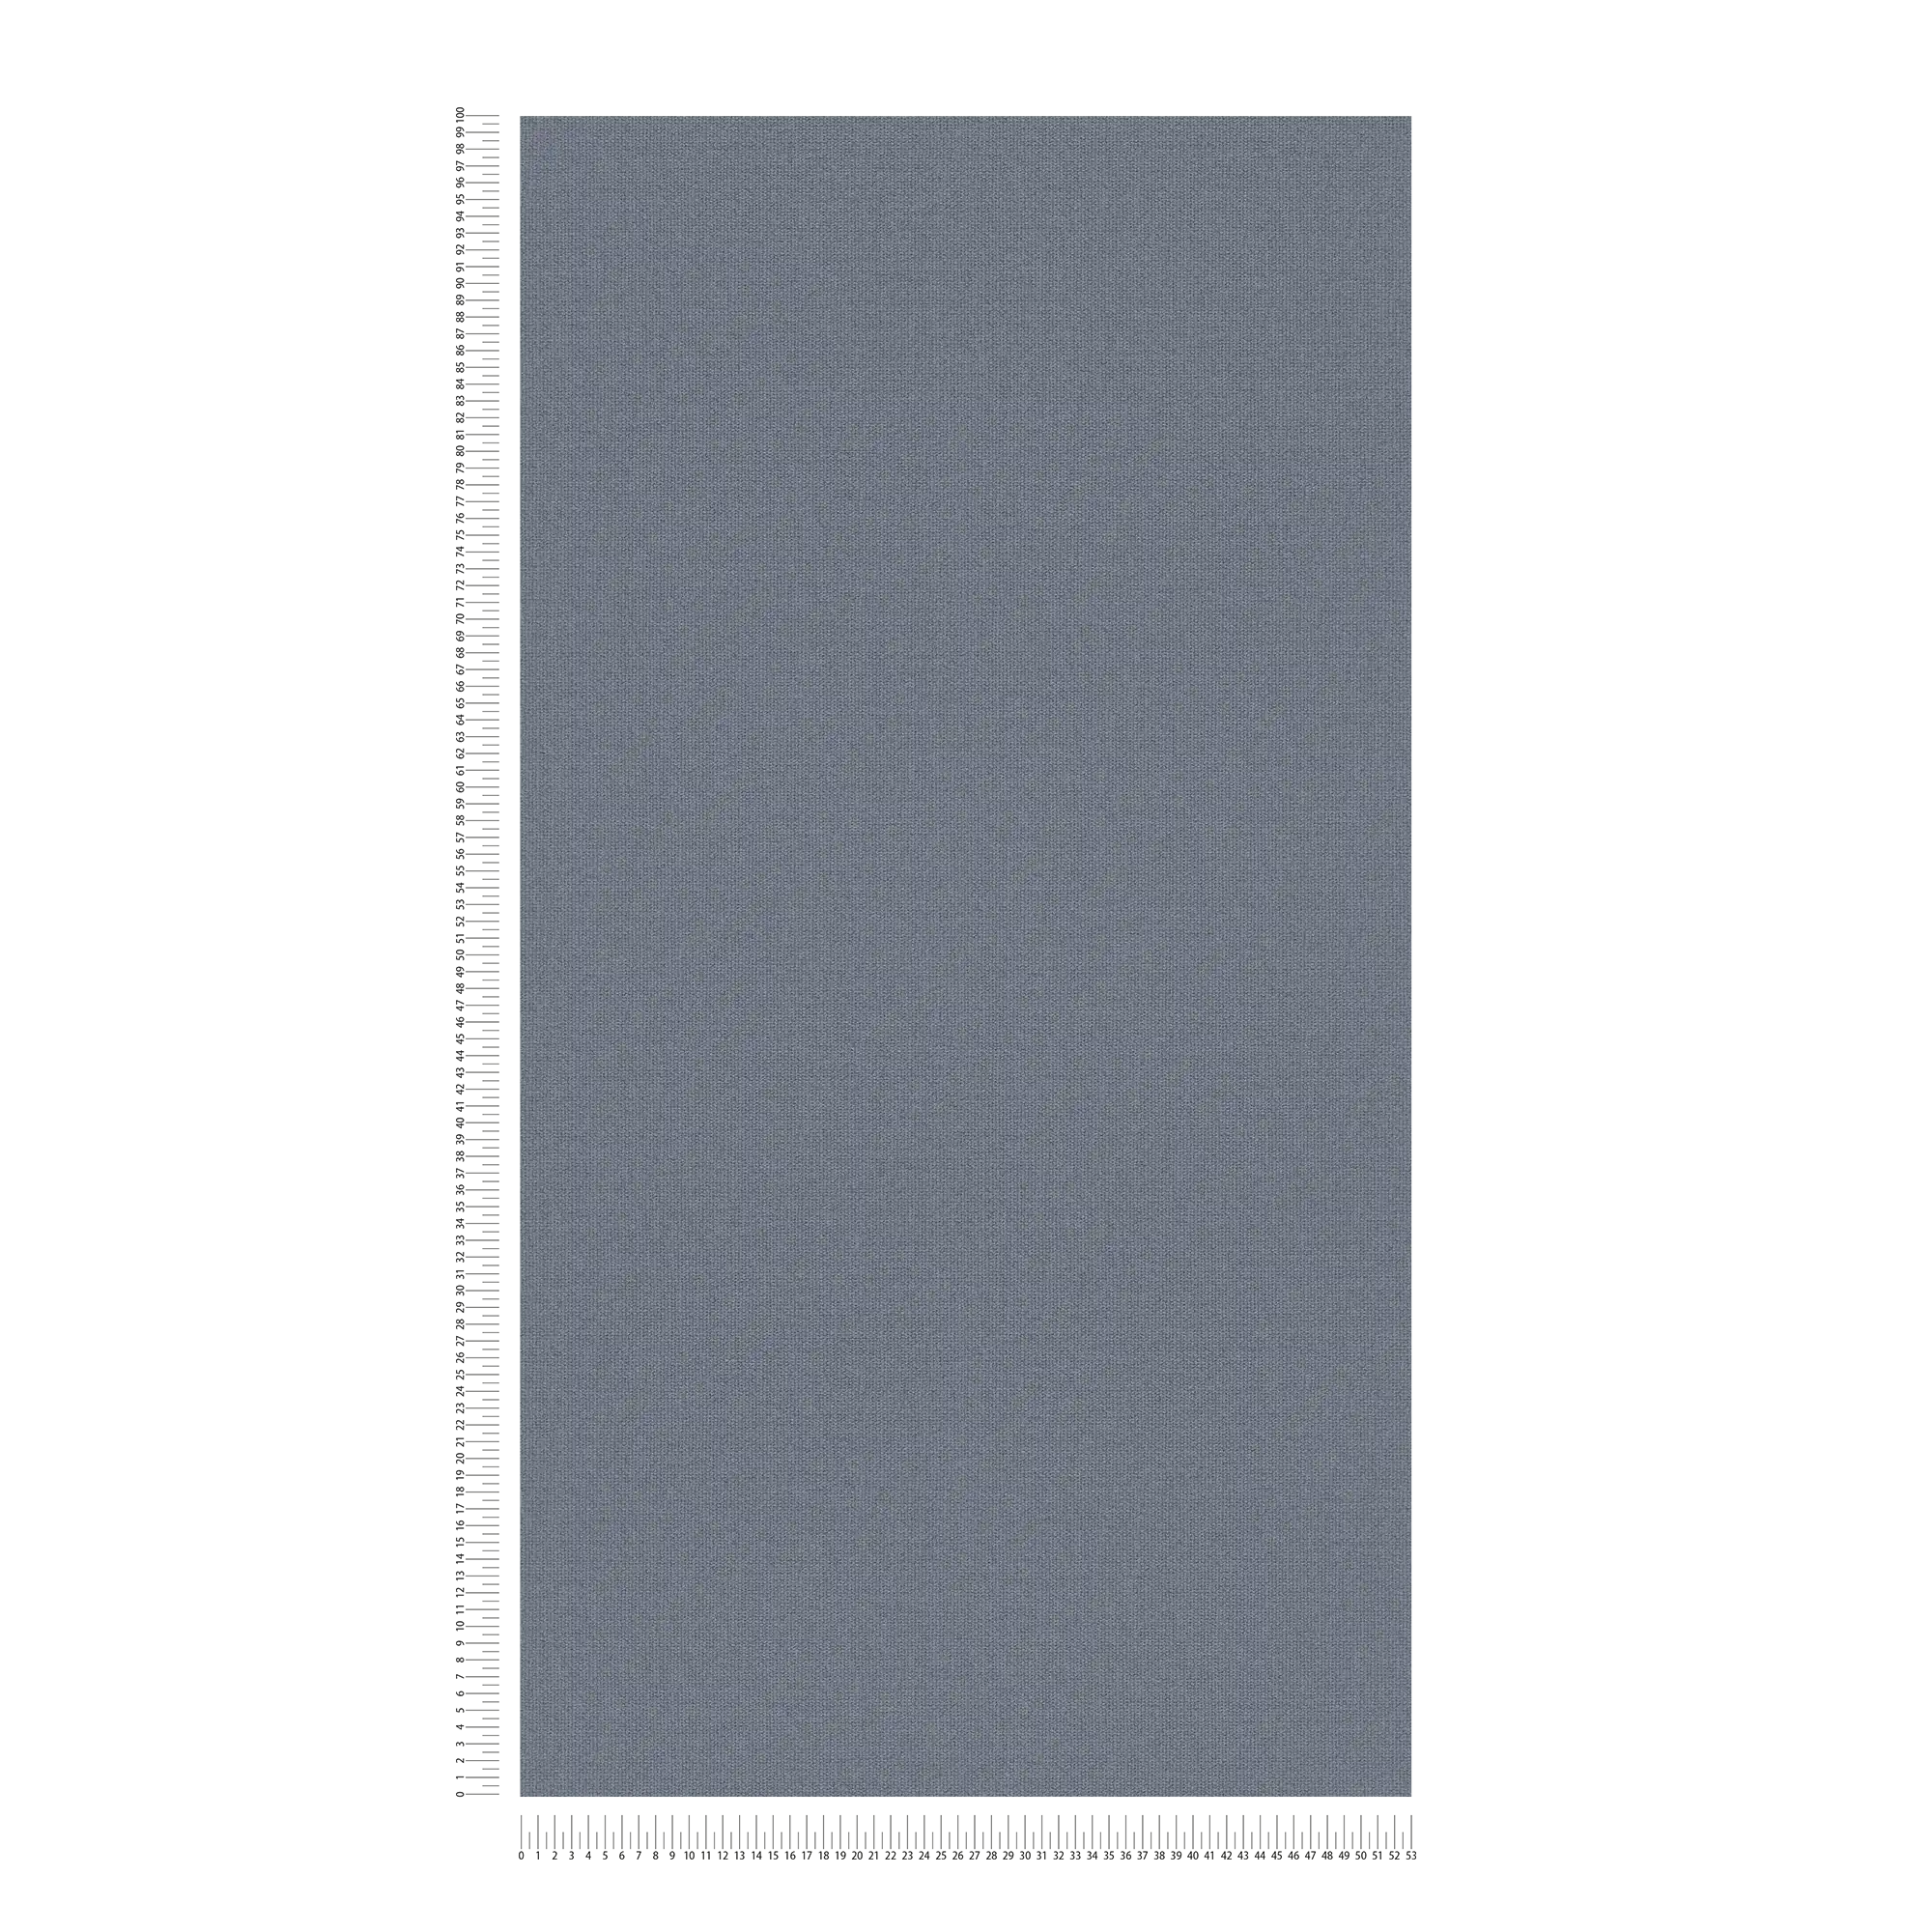             Carta da parati in lino con superficie strutturata, tinta unita - Blu
        